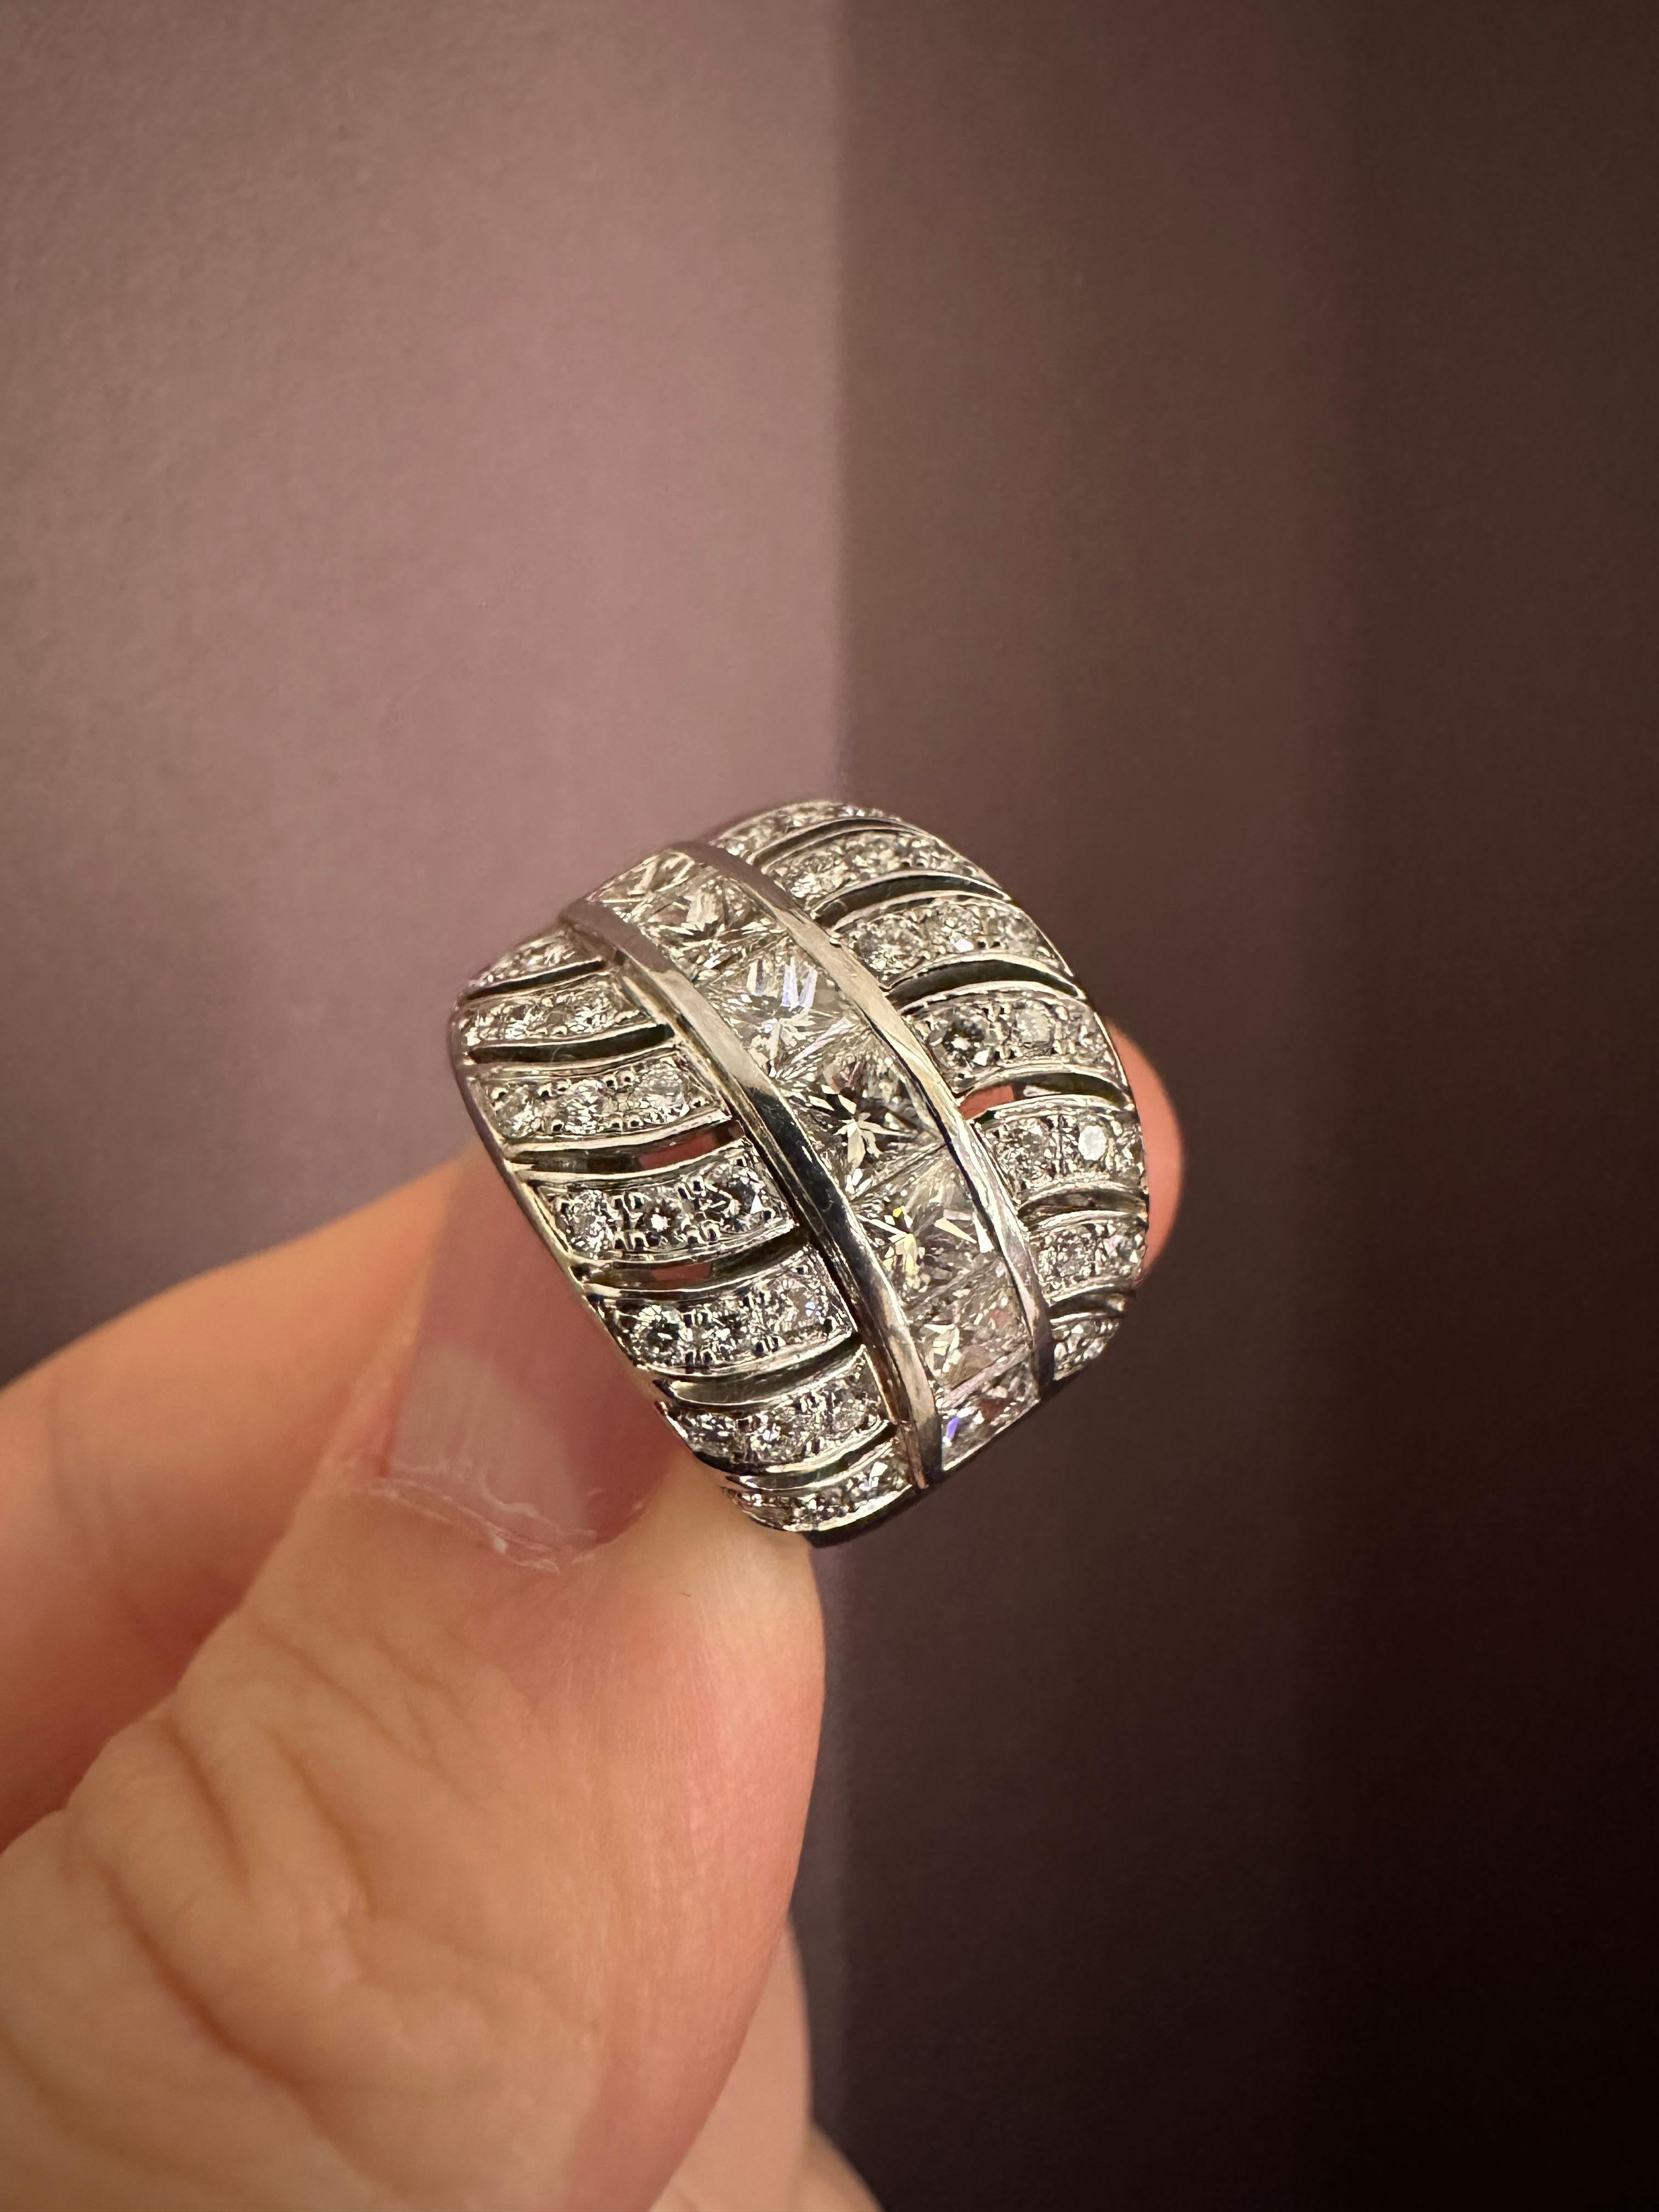 Rosior Vintage Cocktail Ring serti en platine avec :
- 7 diamants taille princesse pesant 1,44 ct ;
- 42 diamants taille brillant pesant 0,72 ct.
G-VVS.
Pièce unique.
Estampillé par le bureau d'assay portugais comme 950 Platinum.
Estampillé du